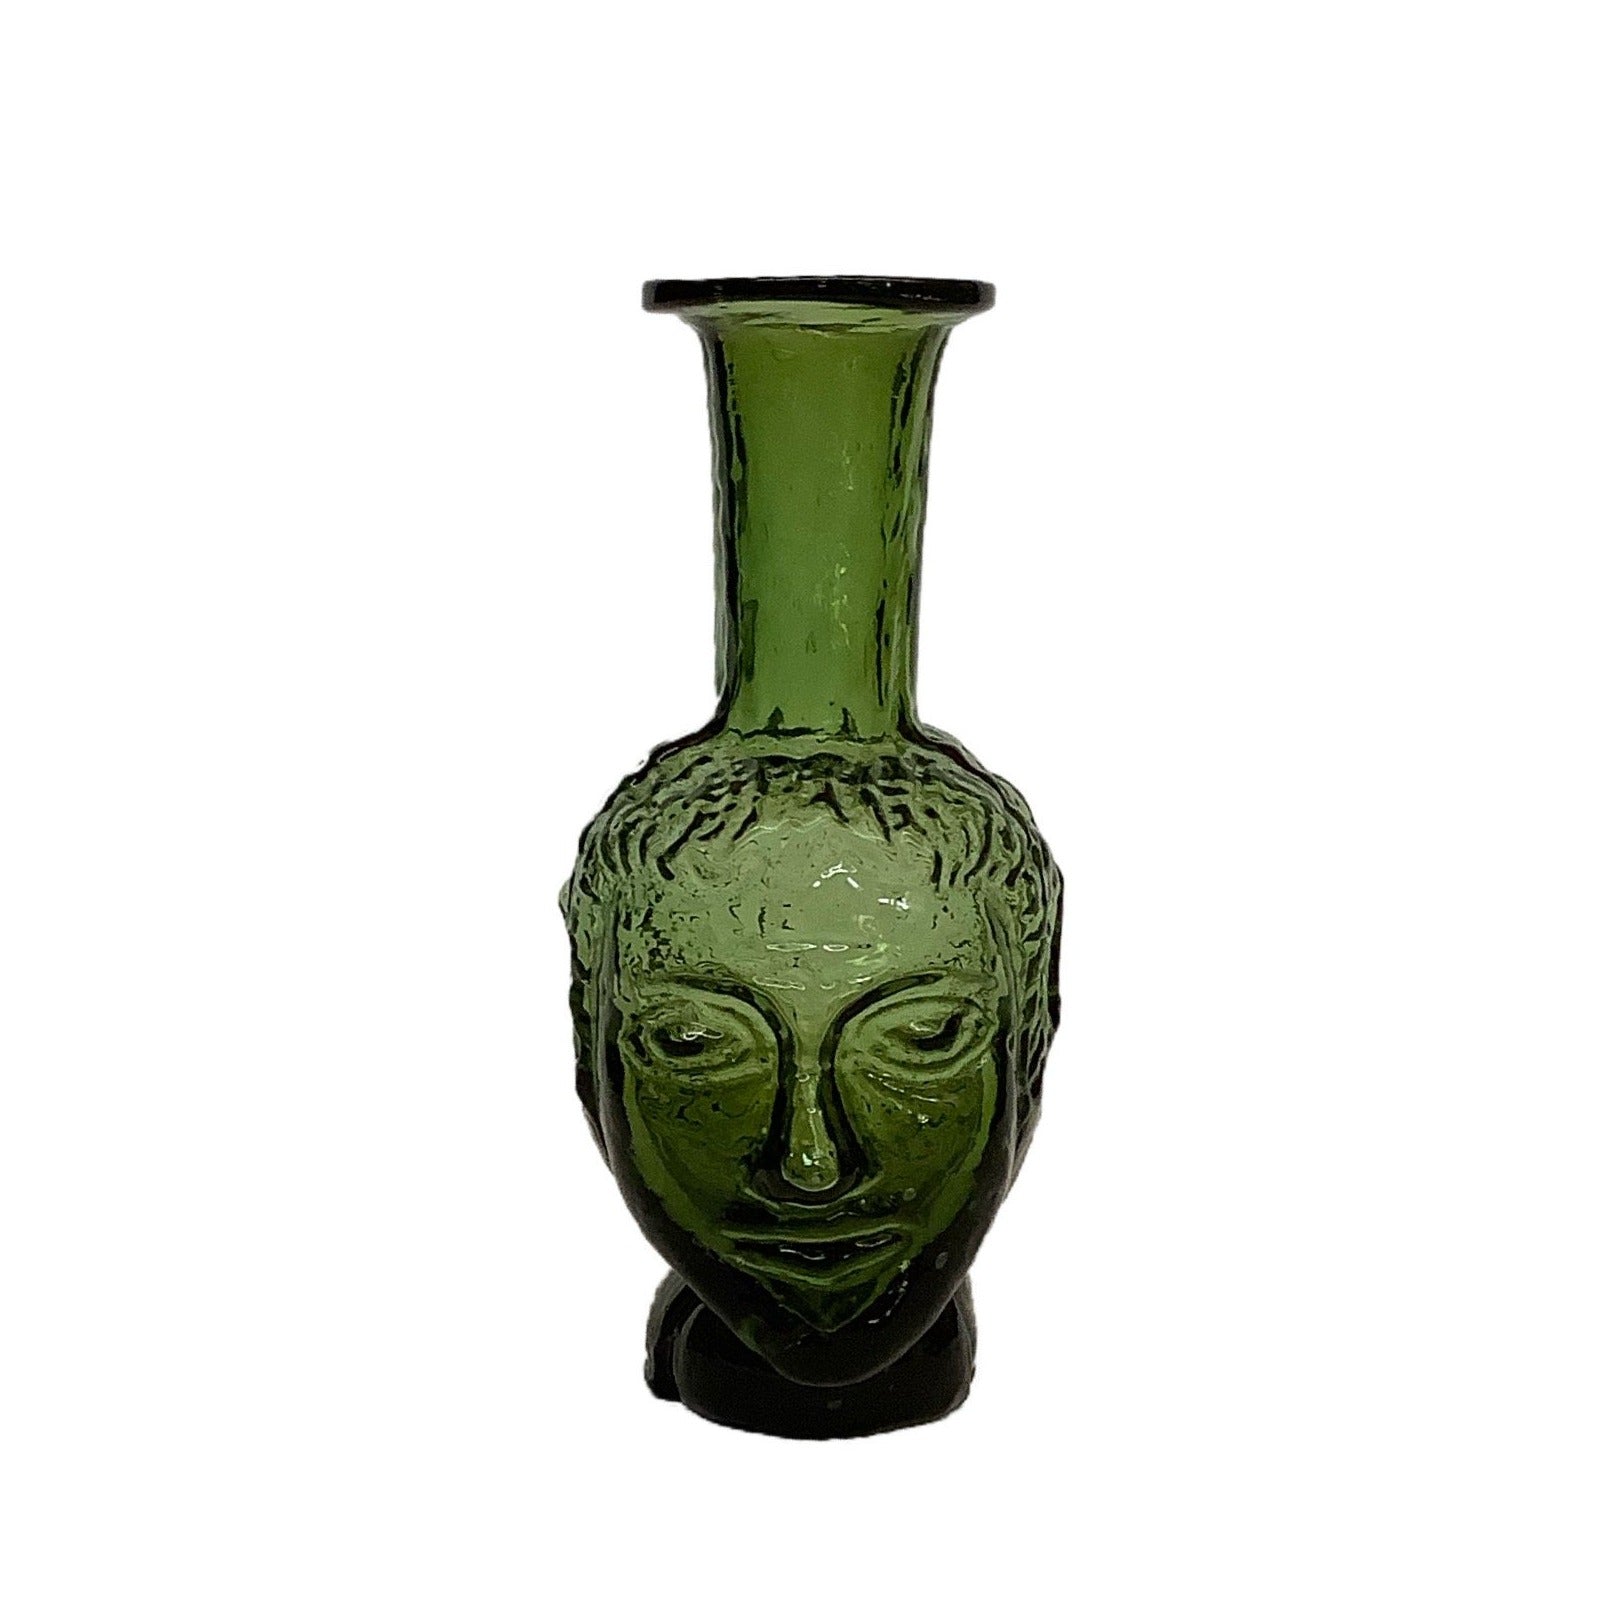 Tête Vase in Olive Glass